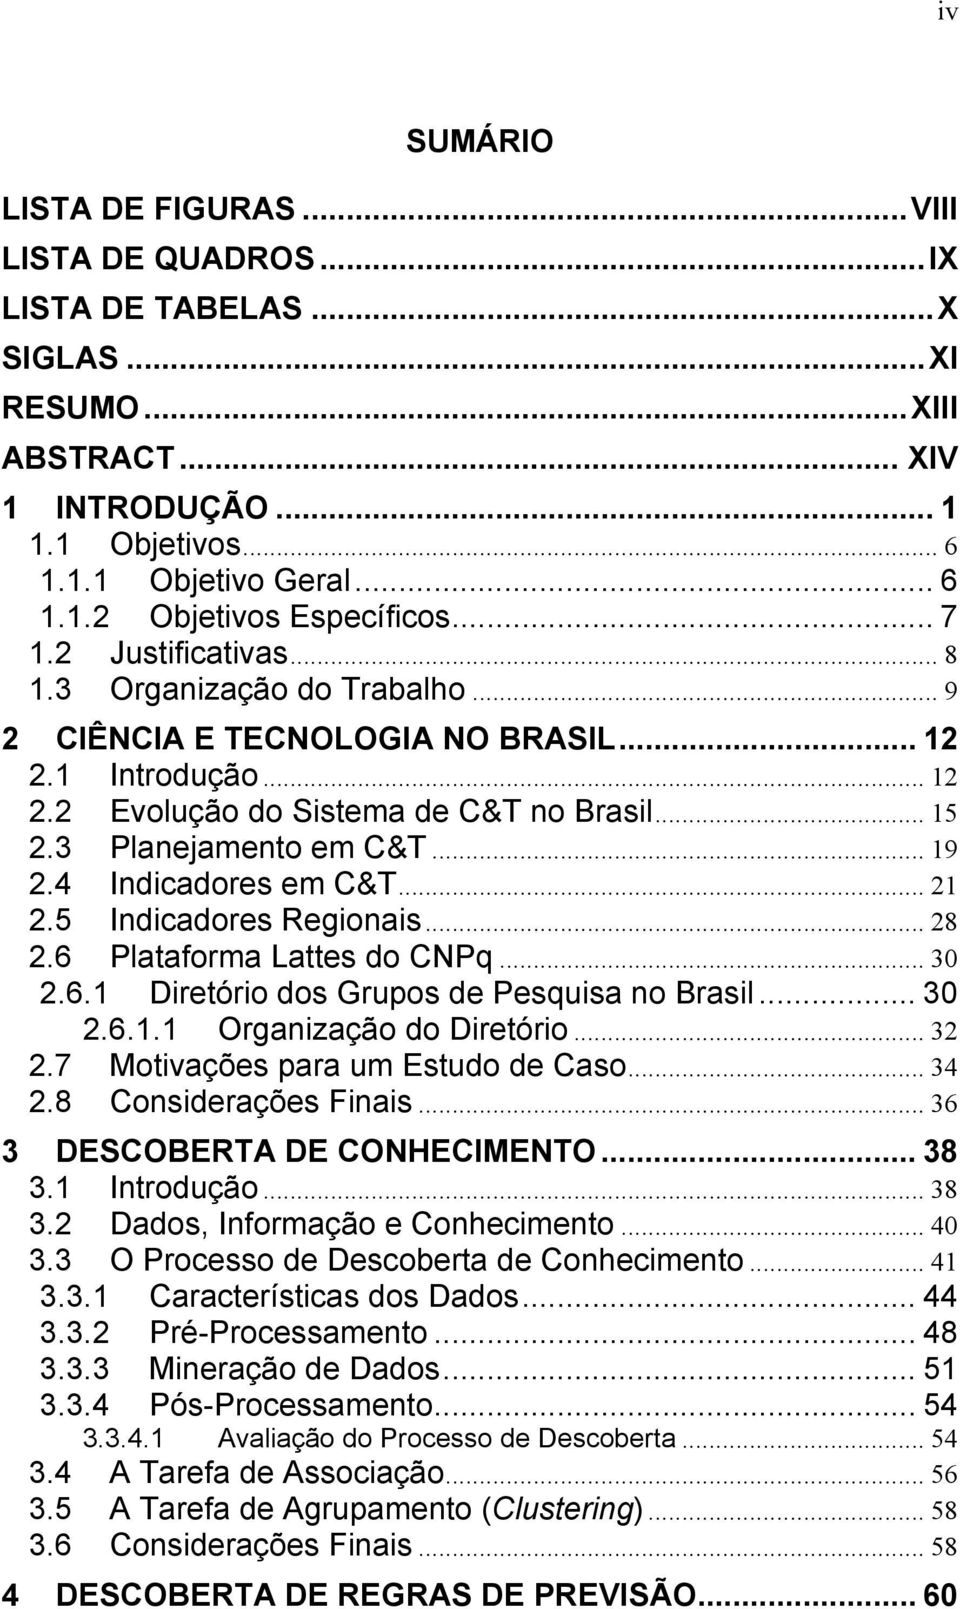 4 Indicadores em C&T... 21 2.5 Indicadores Regionais... 28 2.6 Plataforma Lattes do CNPq... 30 2.6.1 Diretório dos Grupos de Pesquisa no Brasil... 30 2.6.1.1 Organização do Diretório... 32 2.